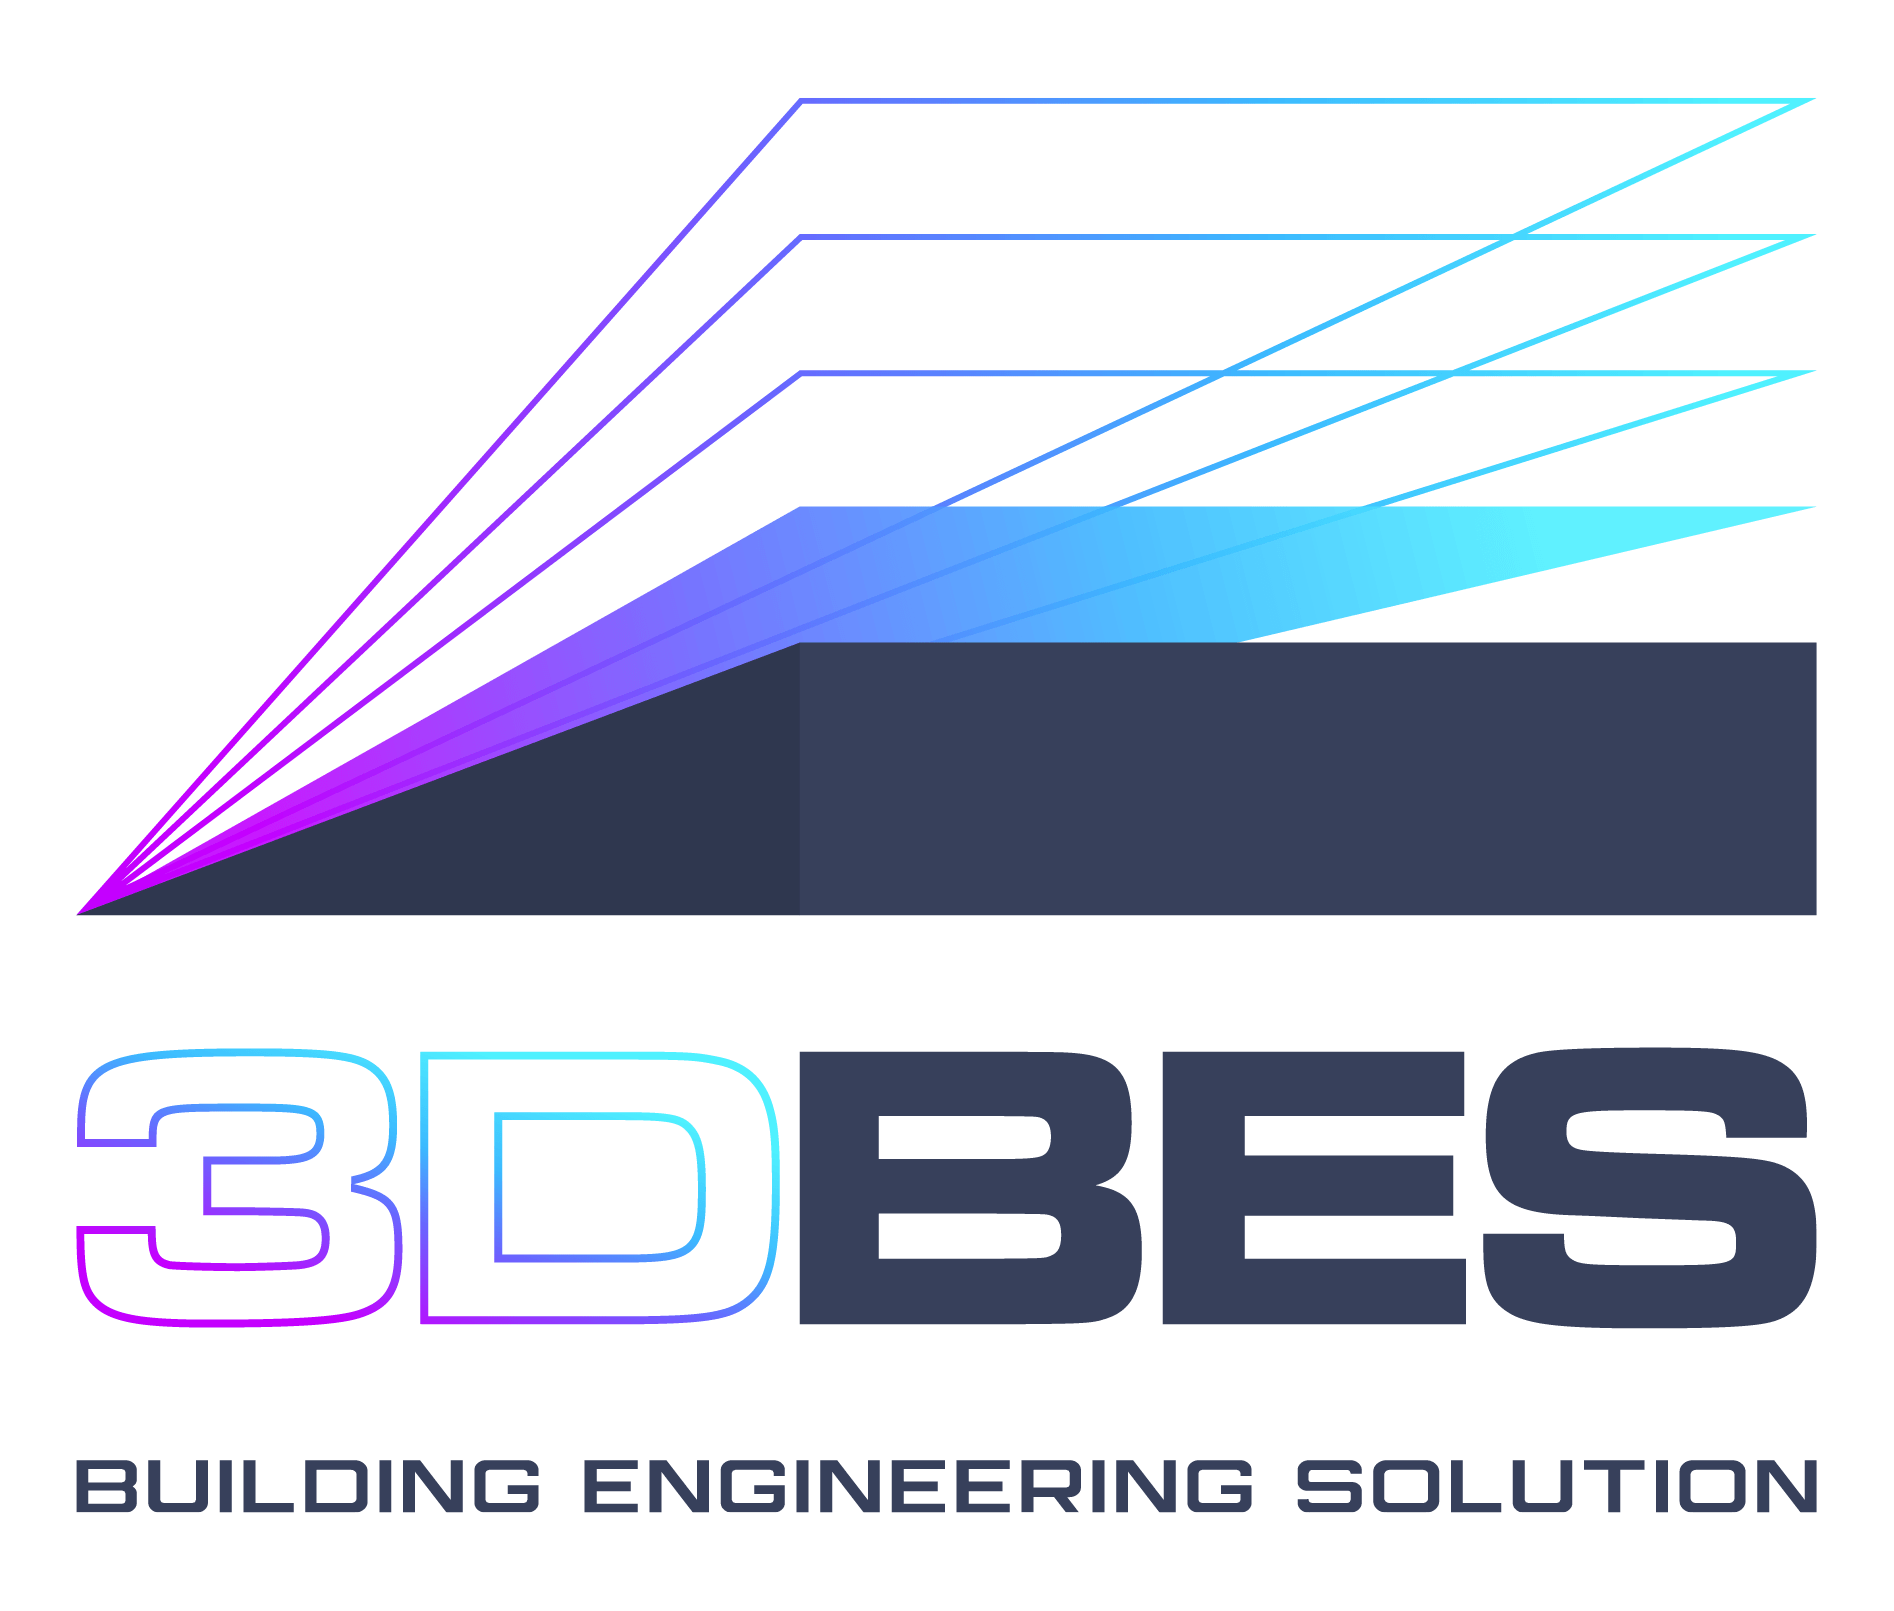 3D Building Engineering Solution vous apporte son expertise et son savoir-faire en ingénierie industrielle sur tous vos chantiers.